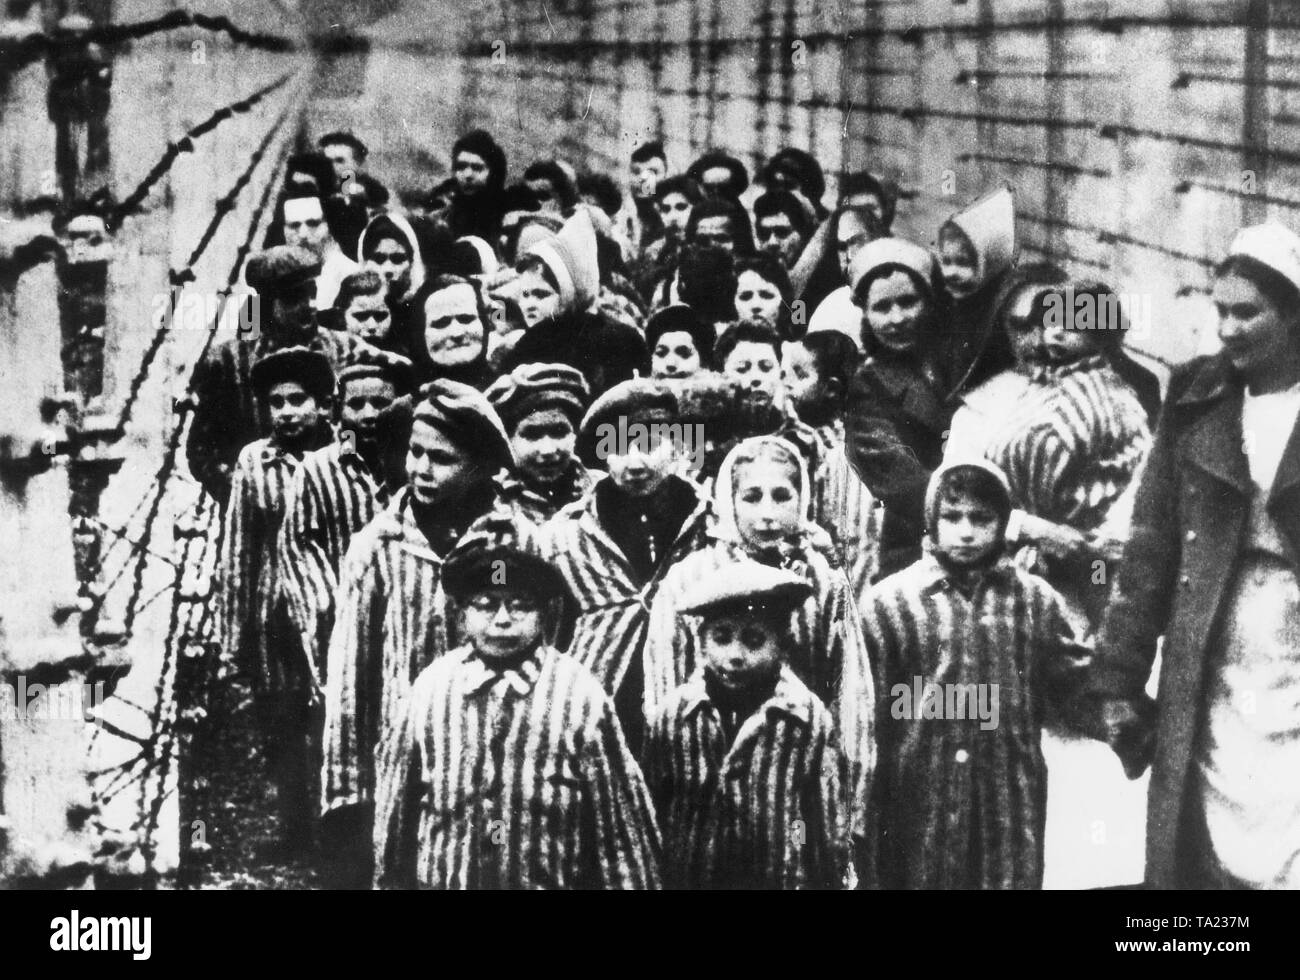 Un gruppo di bambini ebrei in prigione indumenti al campo di concentramento di Auschwitz durante la liberazione nel gennaio 1945. Pochi mesi dopo la liberazione dell'Armata rossa con il polacco extra resi un film circa la liberazione dei campi di concentramento, da cui questa immagine potrebbe venire. Foto Stock